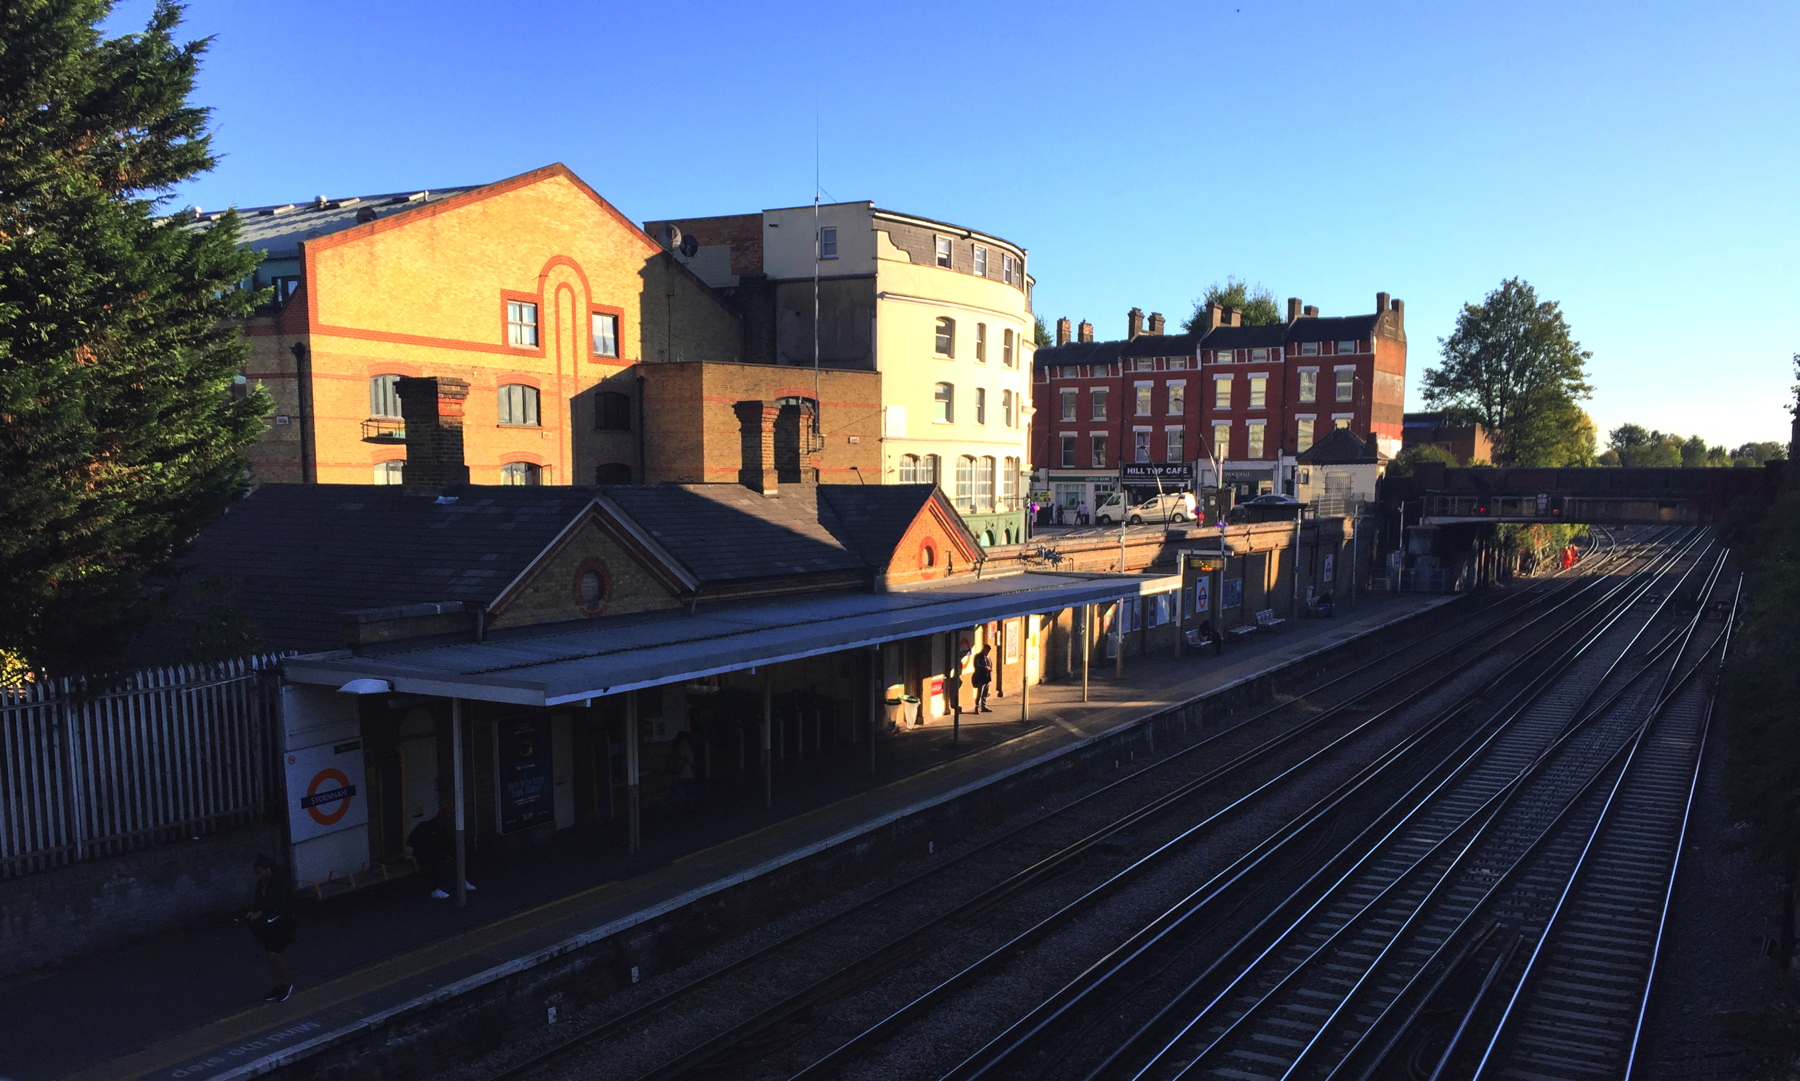 Sydenham station